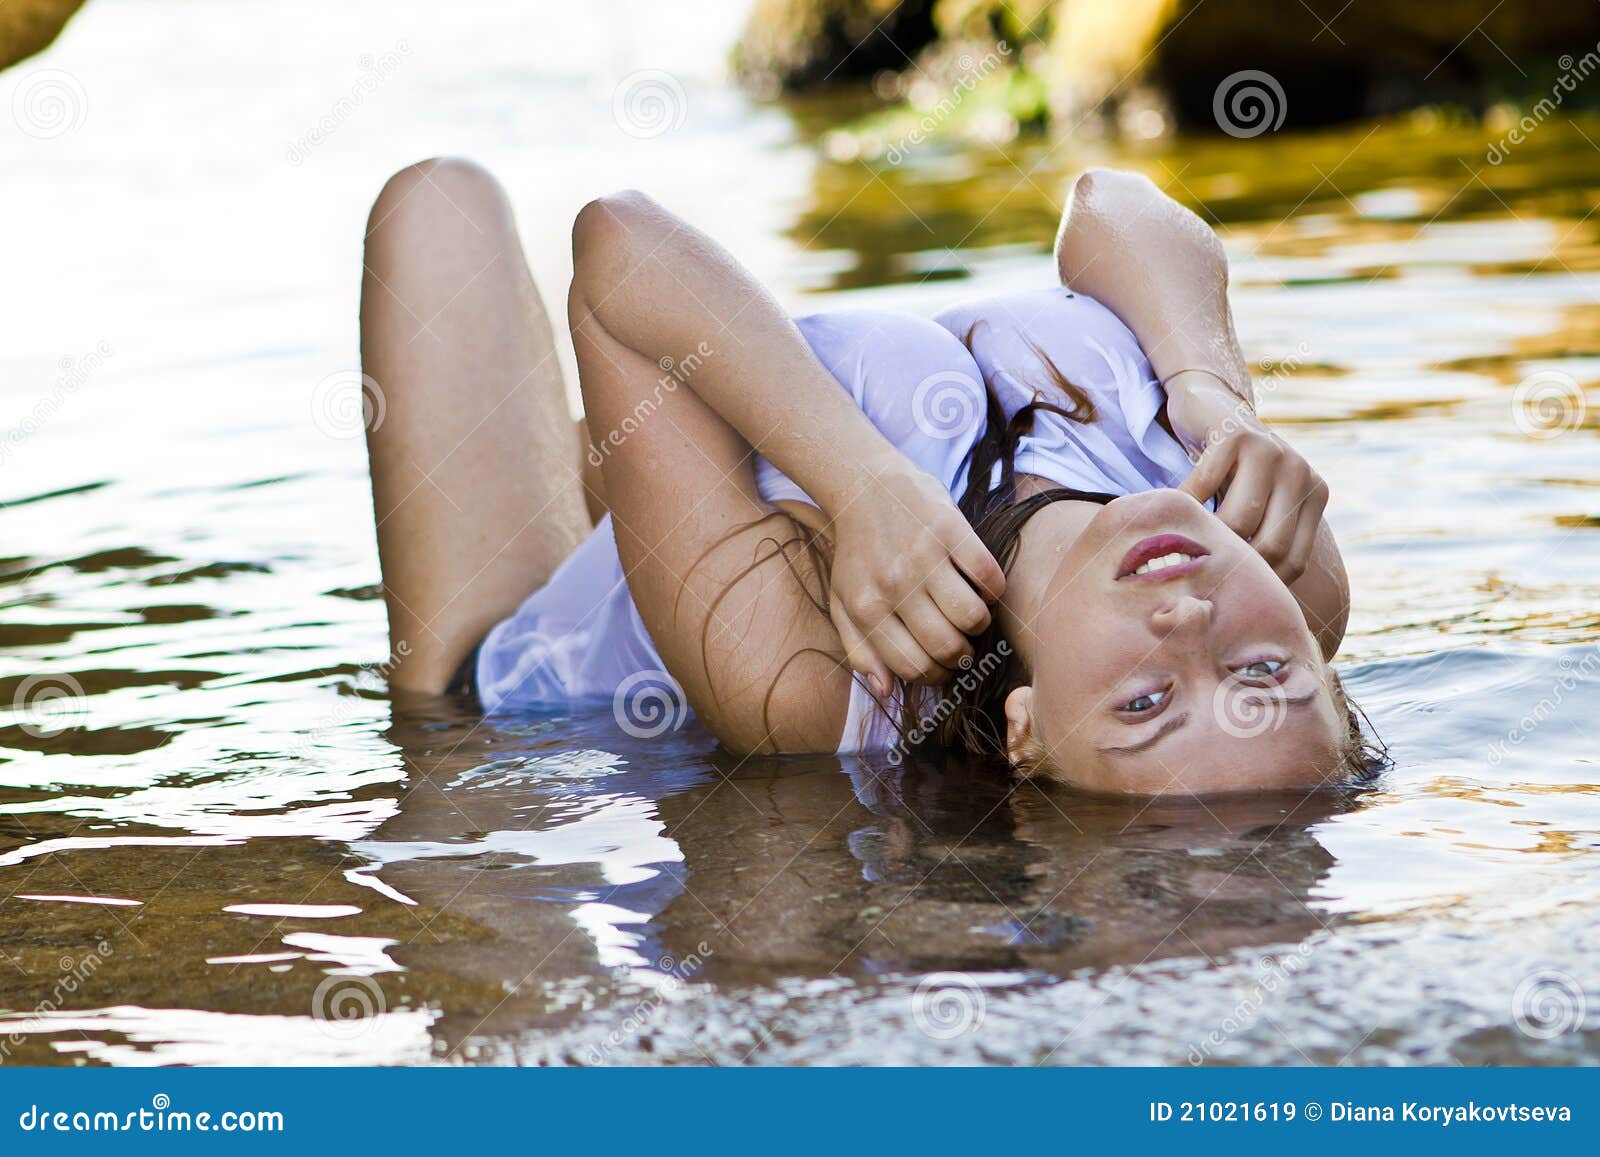 Redheaded Girl in a Wet White T-shirt Stock Image - Image of girl, jordan:  21021619